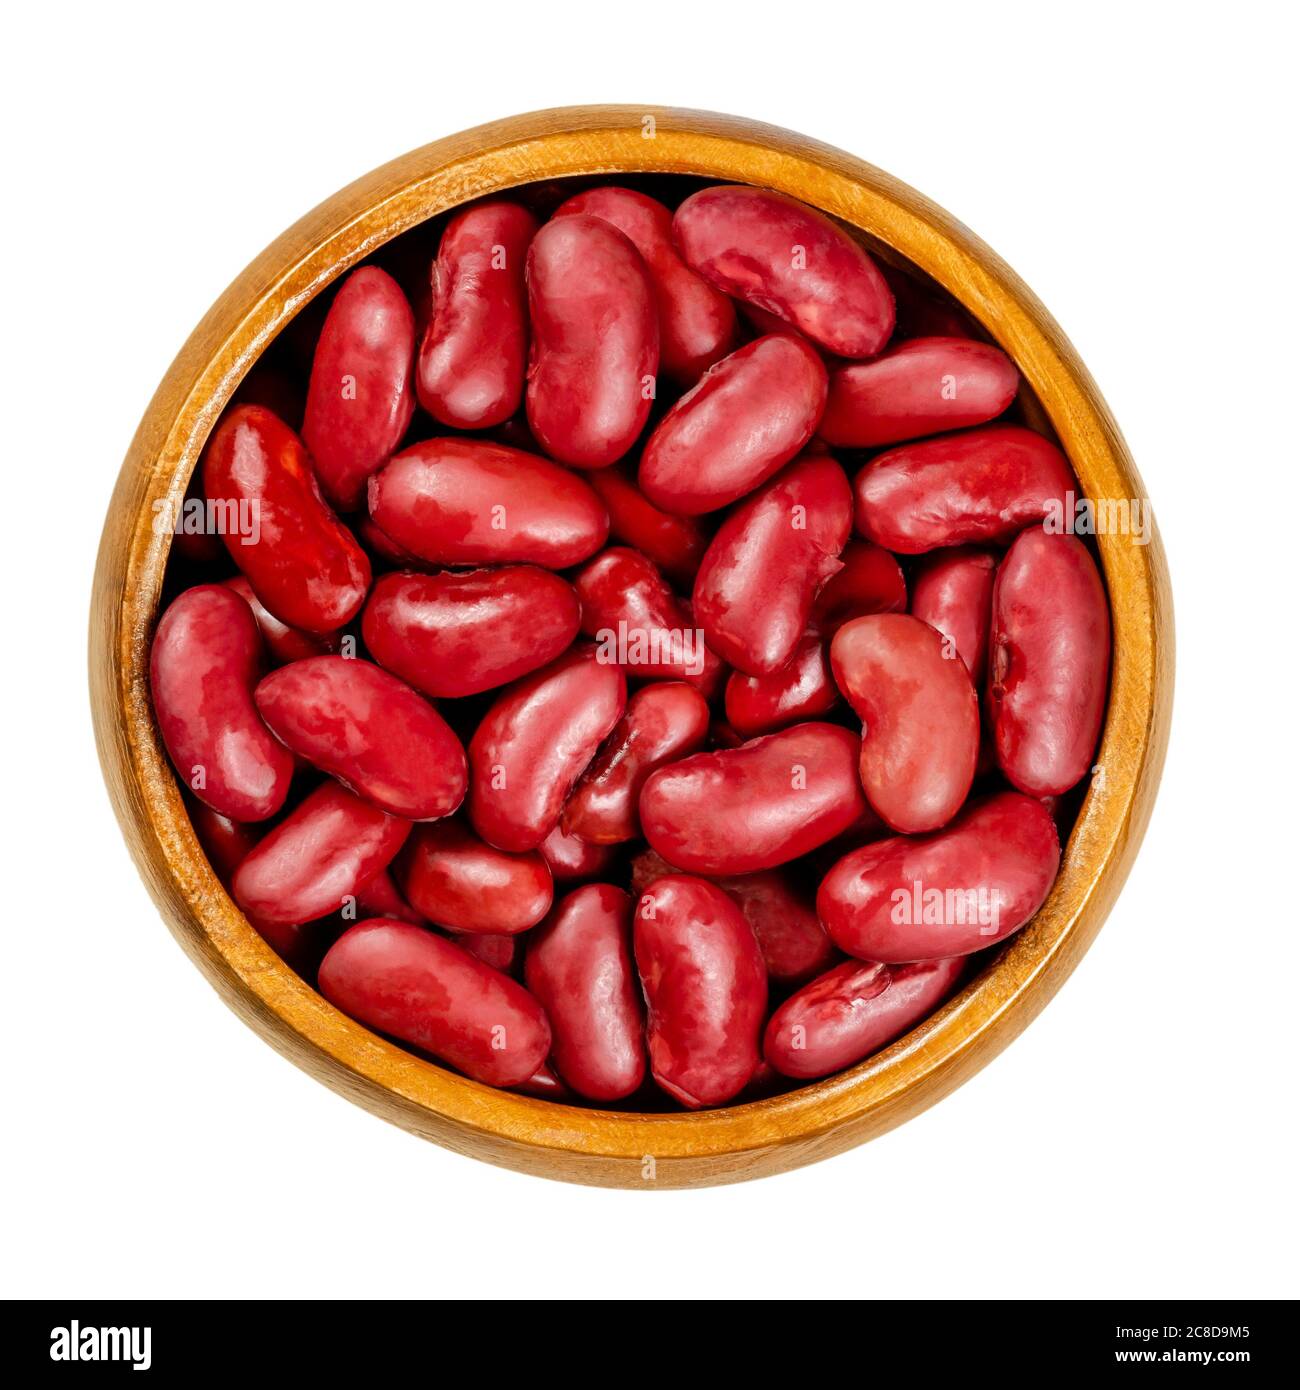 Haricots rouges en conserve dans un bol en bois, également connu sous le nom de haricot commun, Rajma ou Surkh. Une variété de haricots communs, Phaseolus vulgaris. Gros plan. Banque D'Images